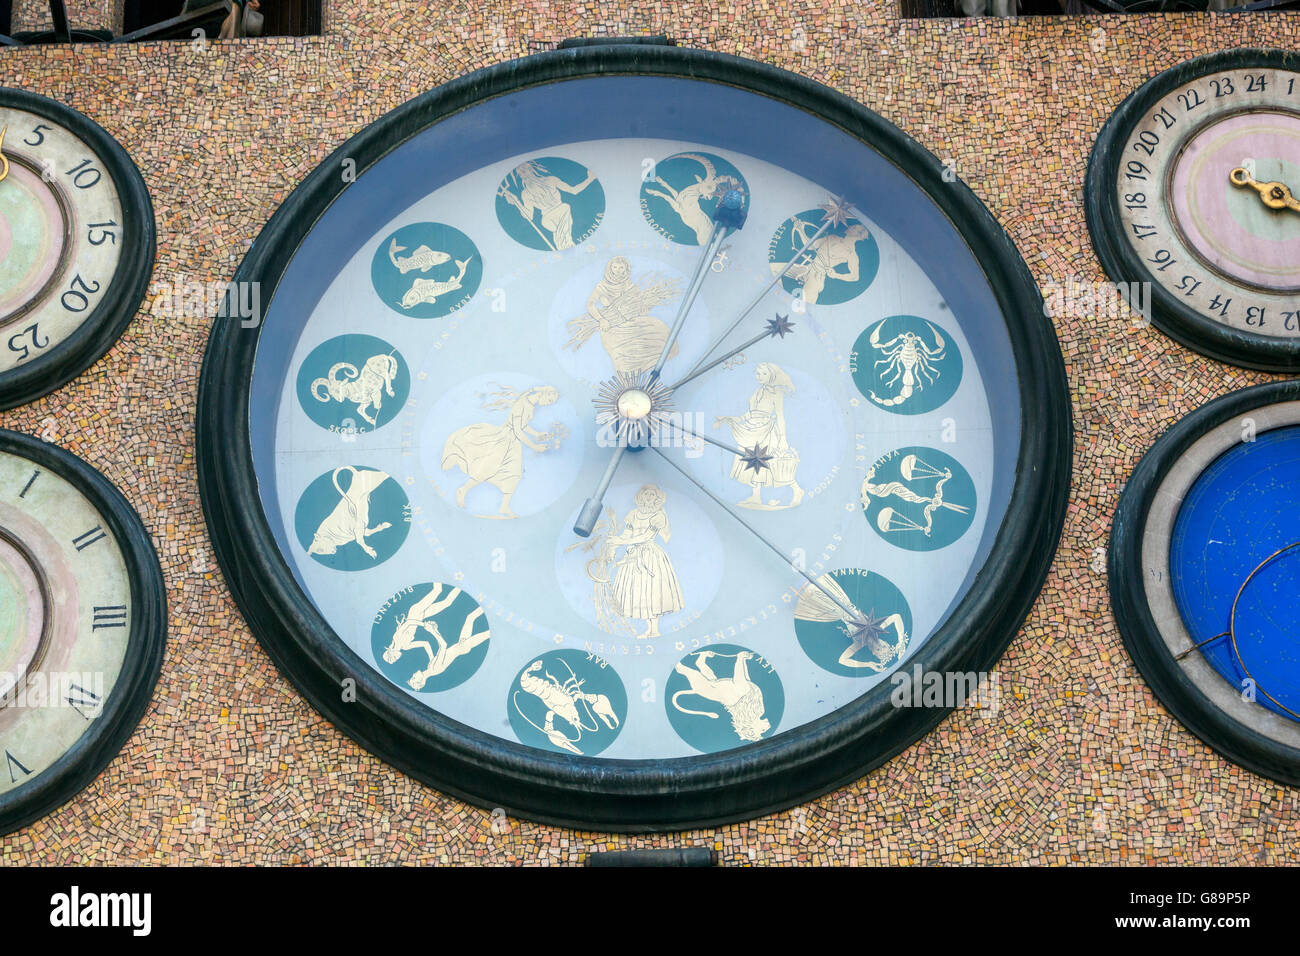 Die astronomische Uhr. Wählscheiben und Zeitanzeigen. Olomouc, Südmähren, Tschechien, Europa große Uhren Stockfoto